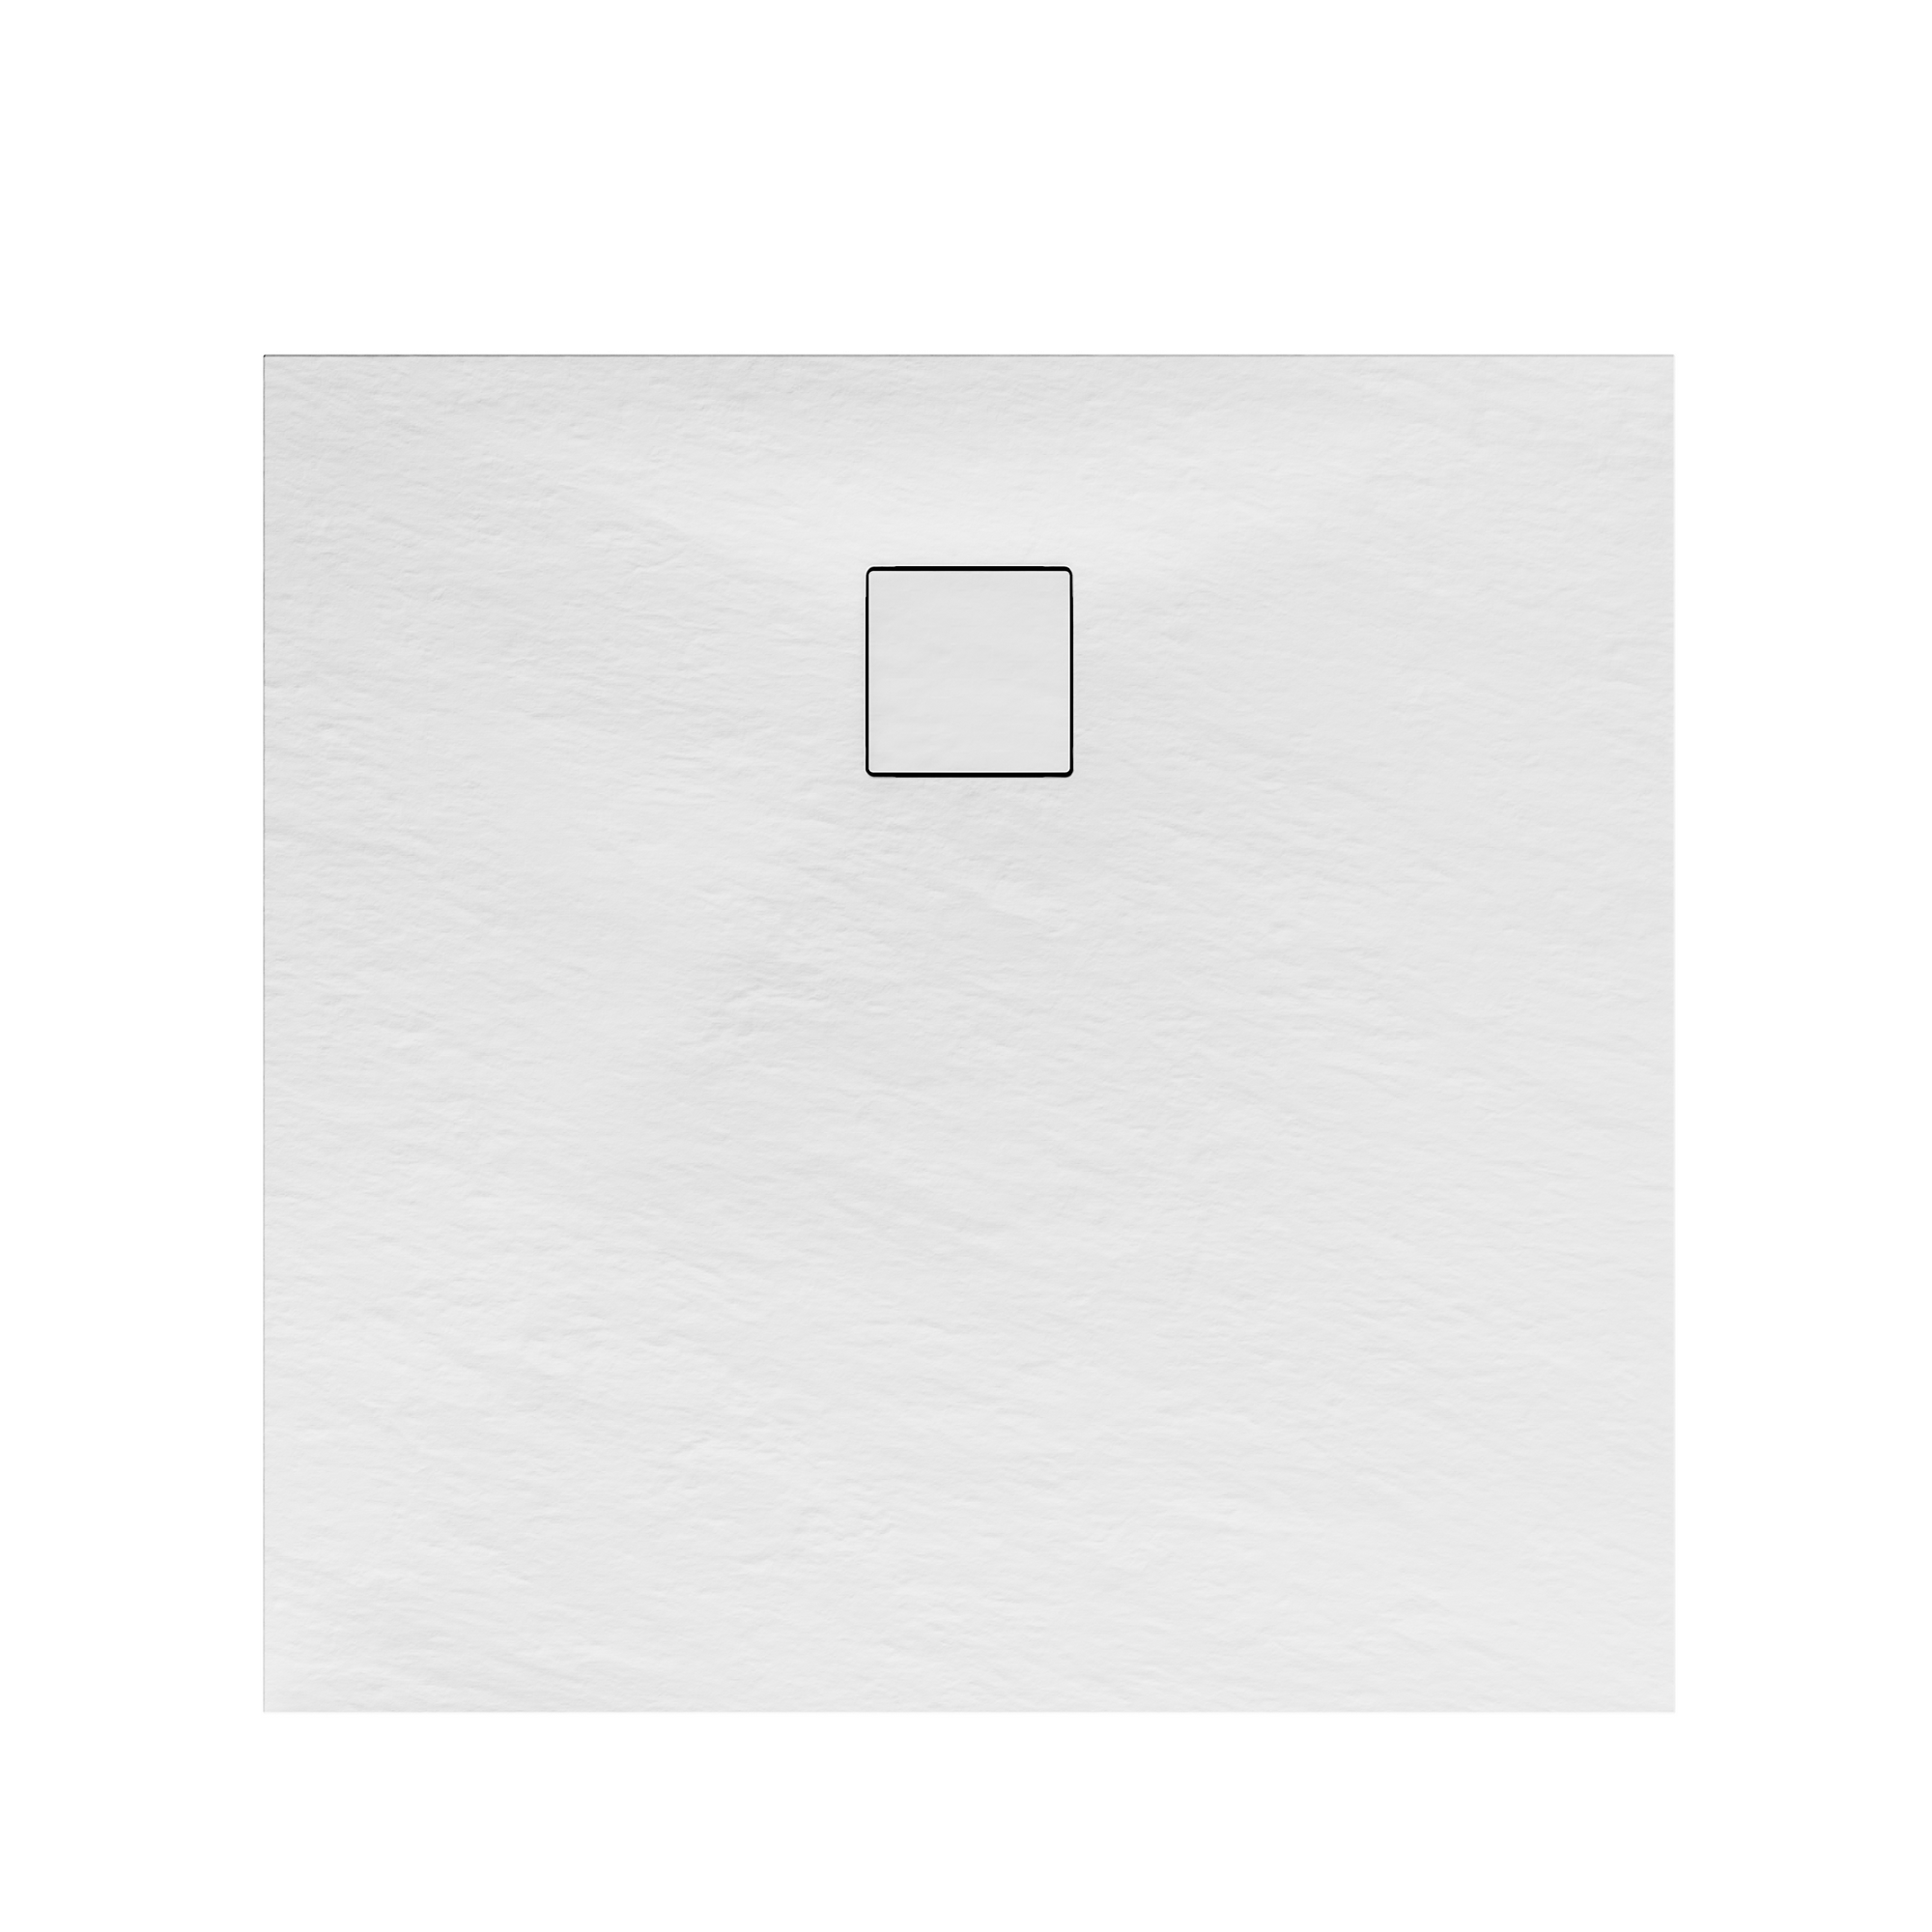 Eckdusche mit Drehfalttür 'Garant' teilgerahmt, Chromoptik/weiß, 90 x 90 x 200 cm + product picture